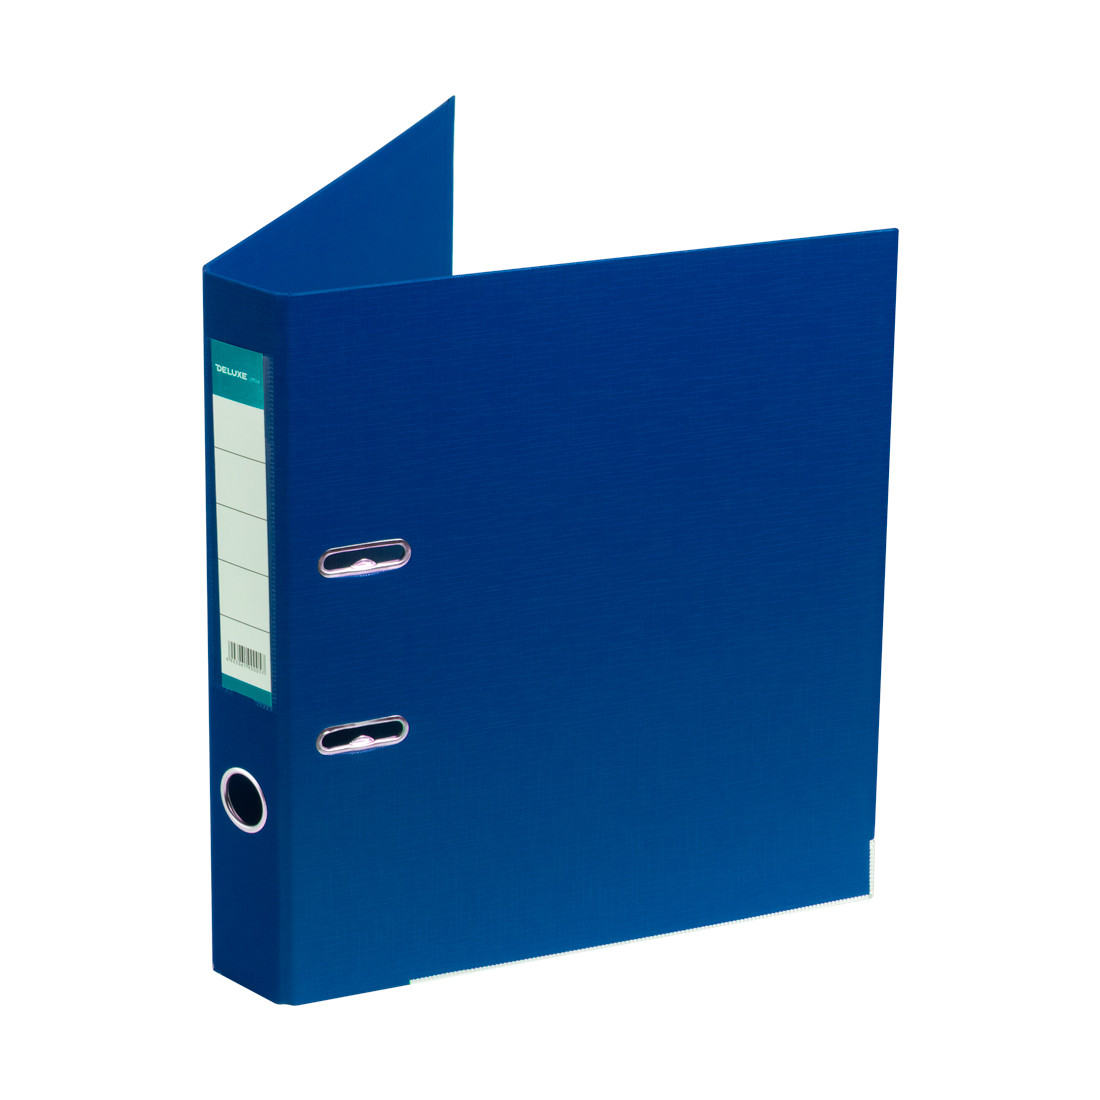 Папка–регистратор Deluxe с арочным механизмом, Office 2-BE21 (2" BLUE), А4, 50 мм, синий